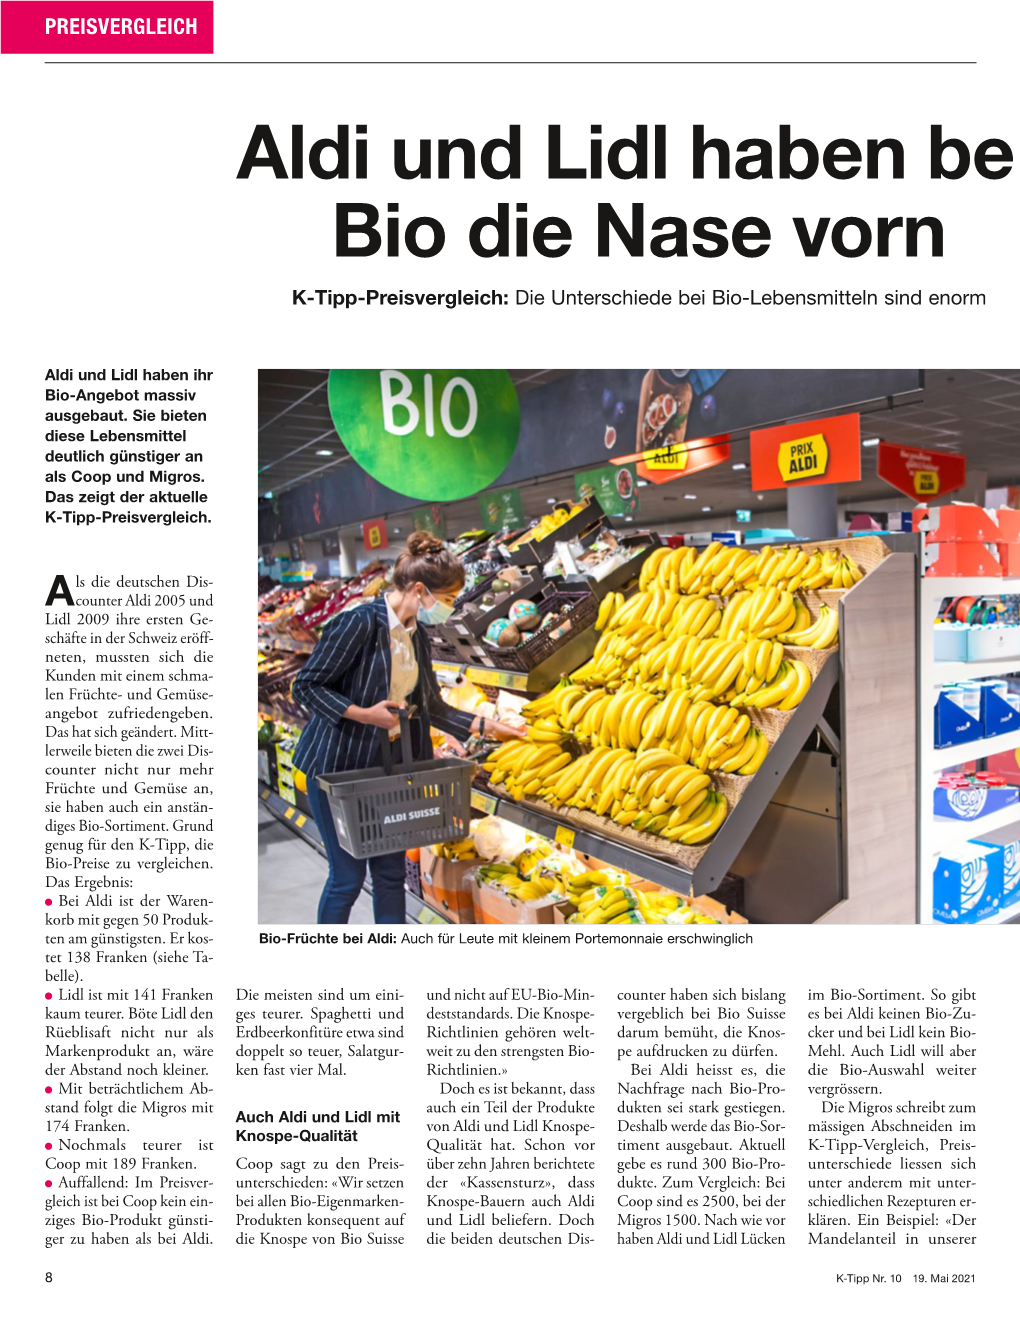 Aldi Und Lidl Haben Be I Bio Die Nase Vorn K-Tipp-Preisvergleich: Die Unterschiede Bei Bio-Lebensmitteln Sind Enorm